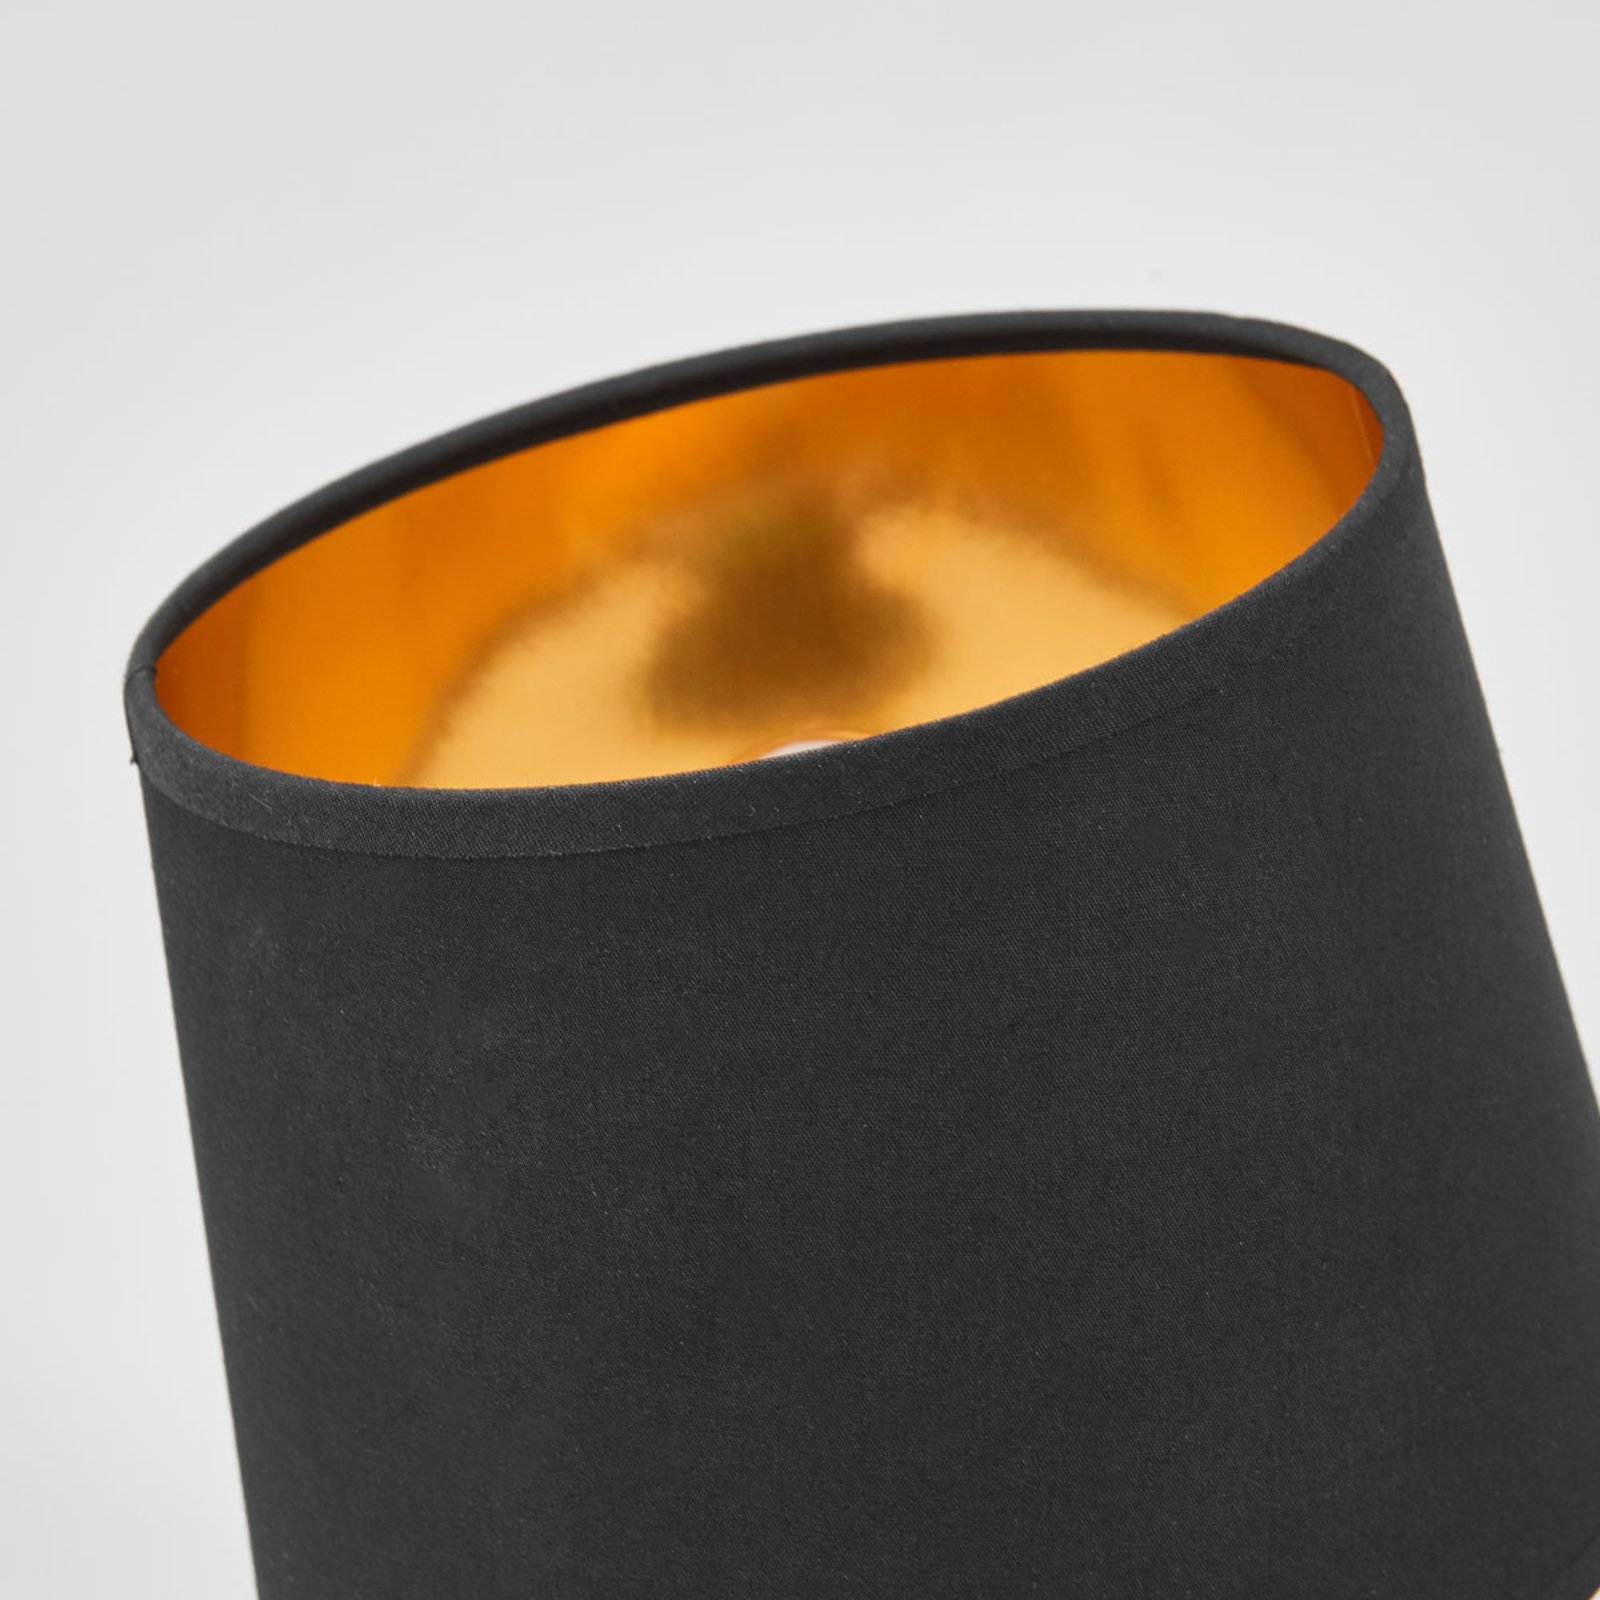 Černo-zlatá stolní lampa Thorina